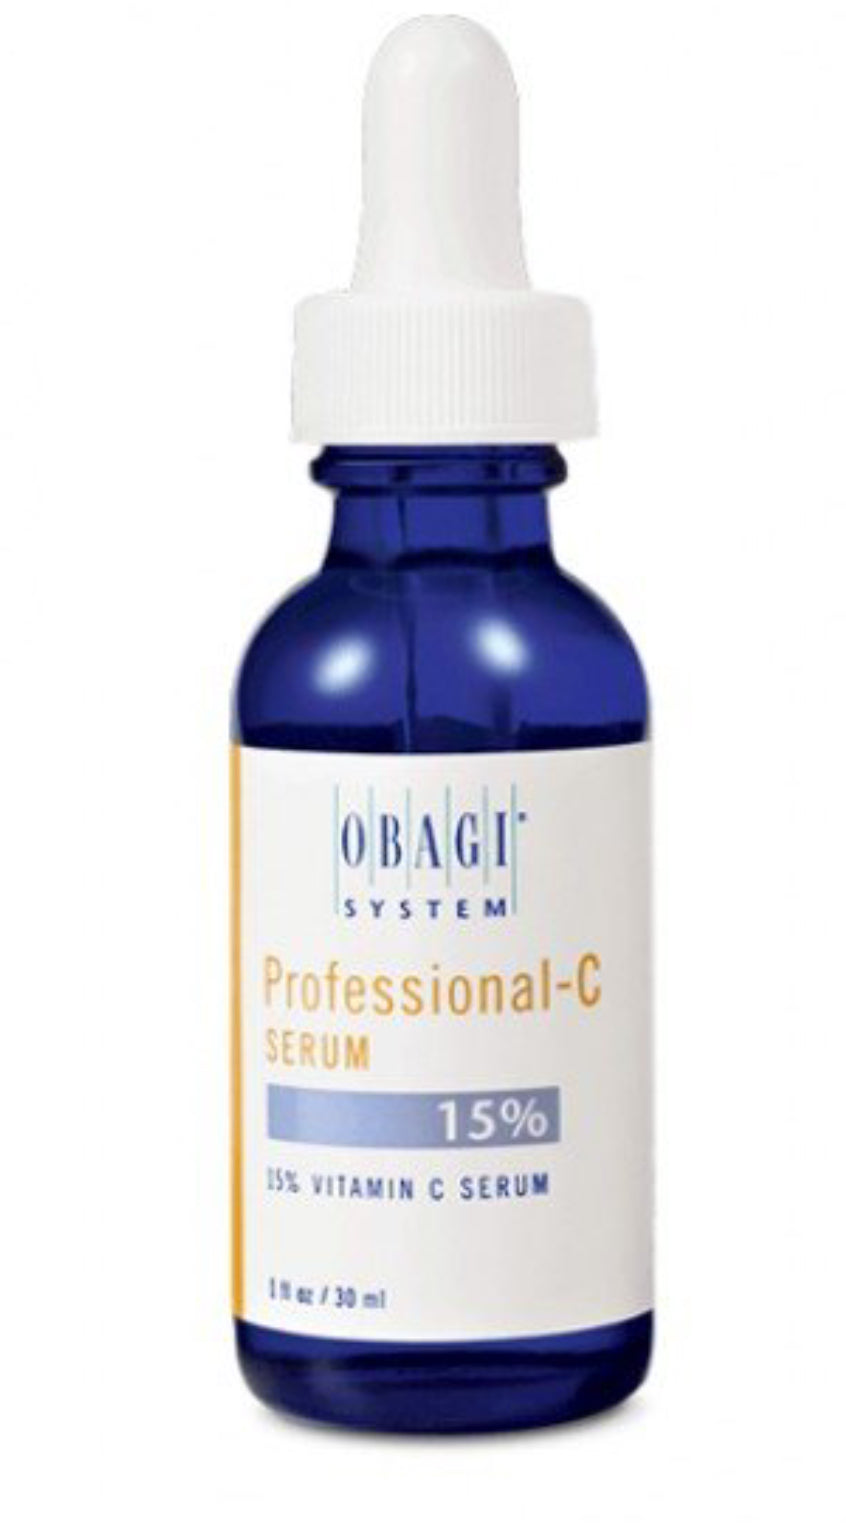 Obagi Professional C Serum 15% - Arden Skincare 